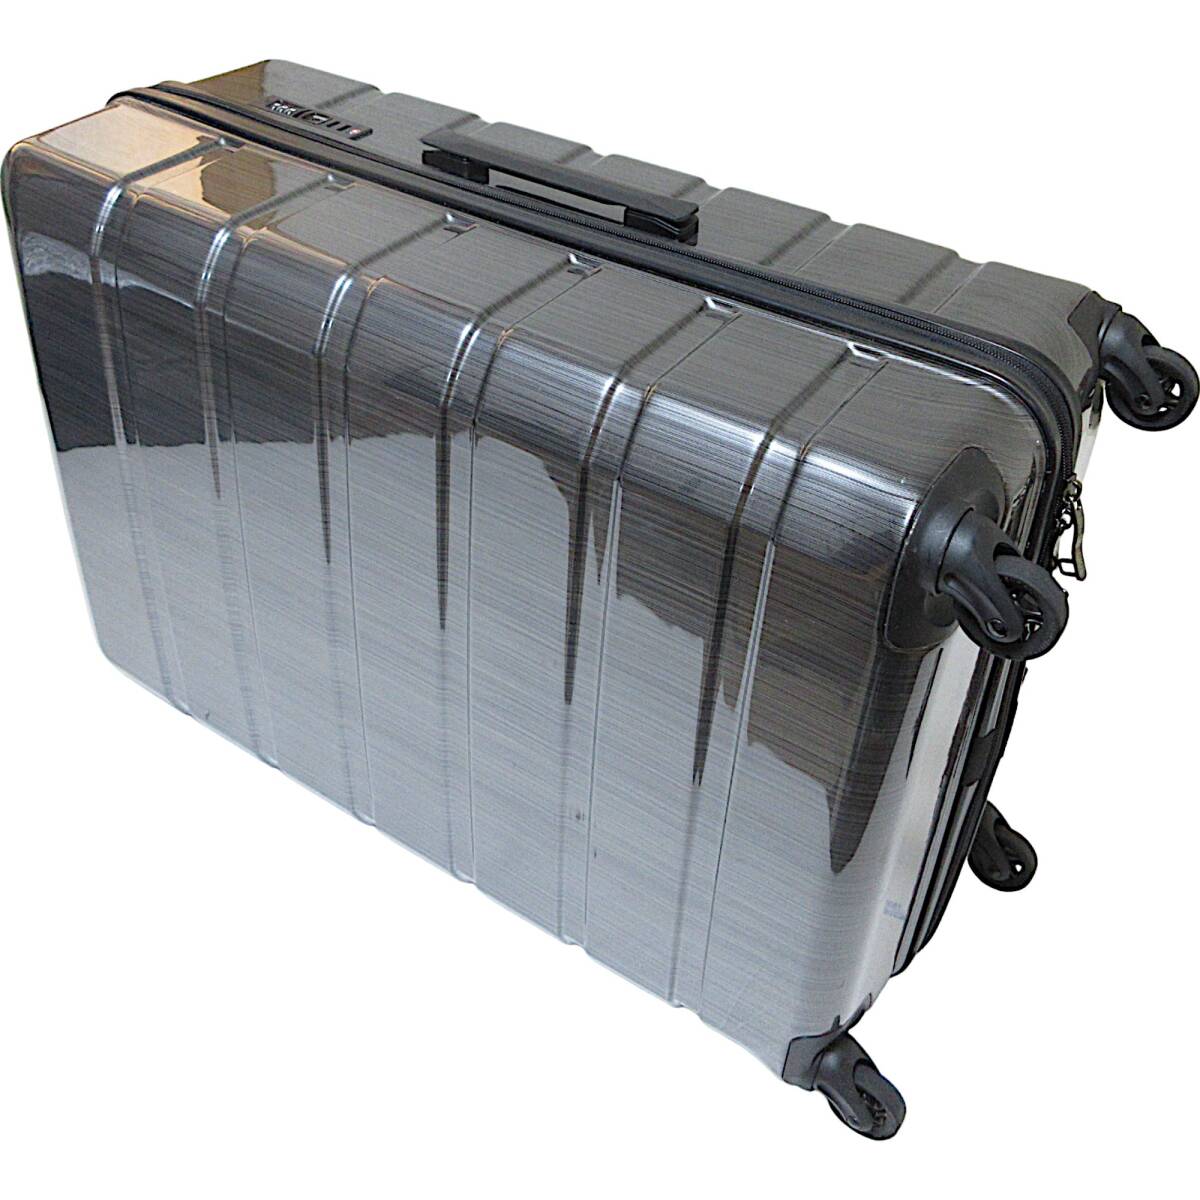 [ перевод есть ][ не использовался ]* чемодан 96L черный большой легкий *TSA блокировка Carry кейс дорожная сумка *J2431